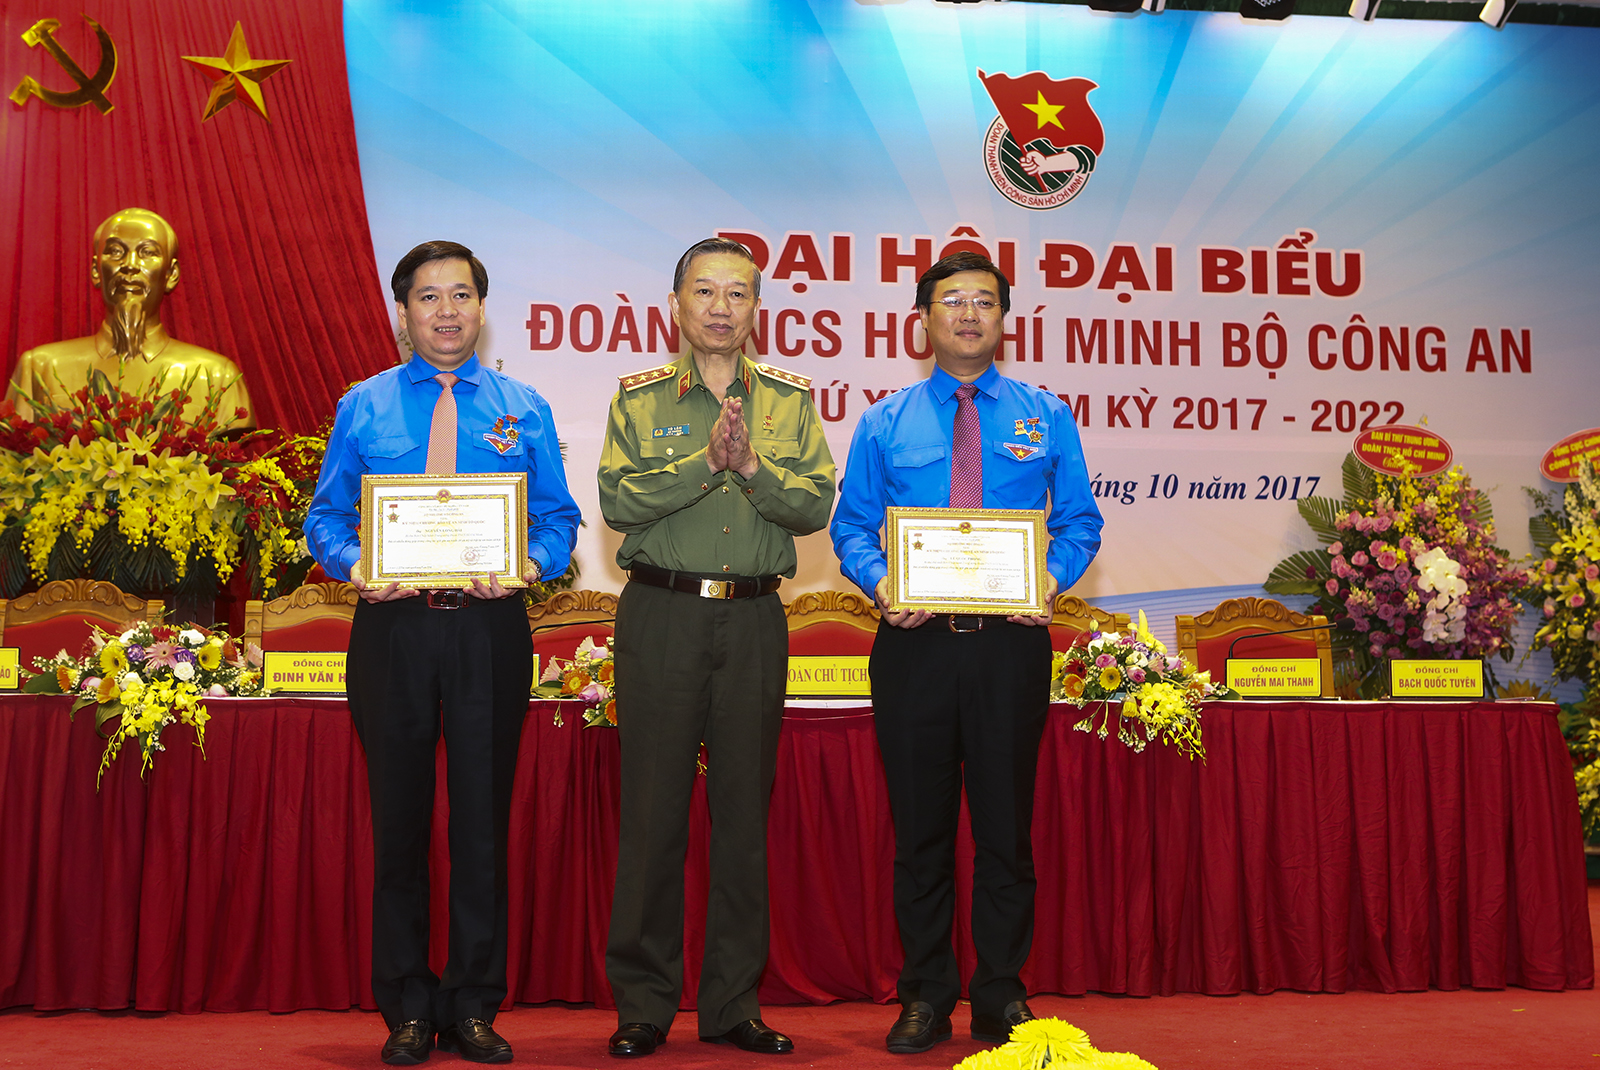 Bộ trưởng Tô Lâm trao tặng Kỷ niệm chương "Bảo vệ An ninh Tổ quốc" cho Bí thư Thứ nhất T.Ư Đoàn Lê Quốc Phong và Bí thư T.Ư Đoàn Nguyễn Long Hải